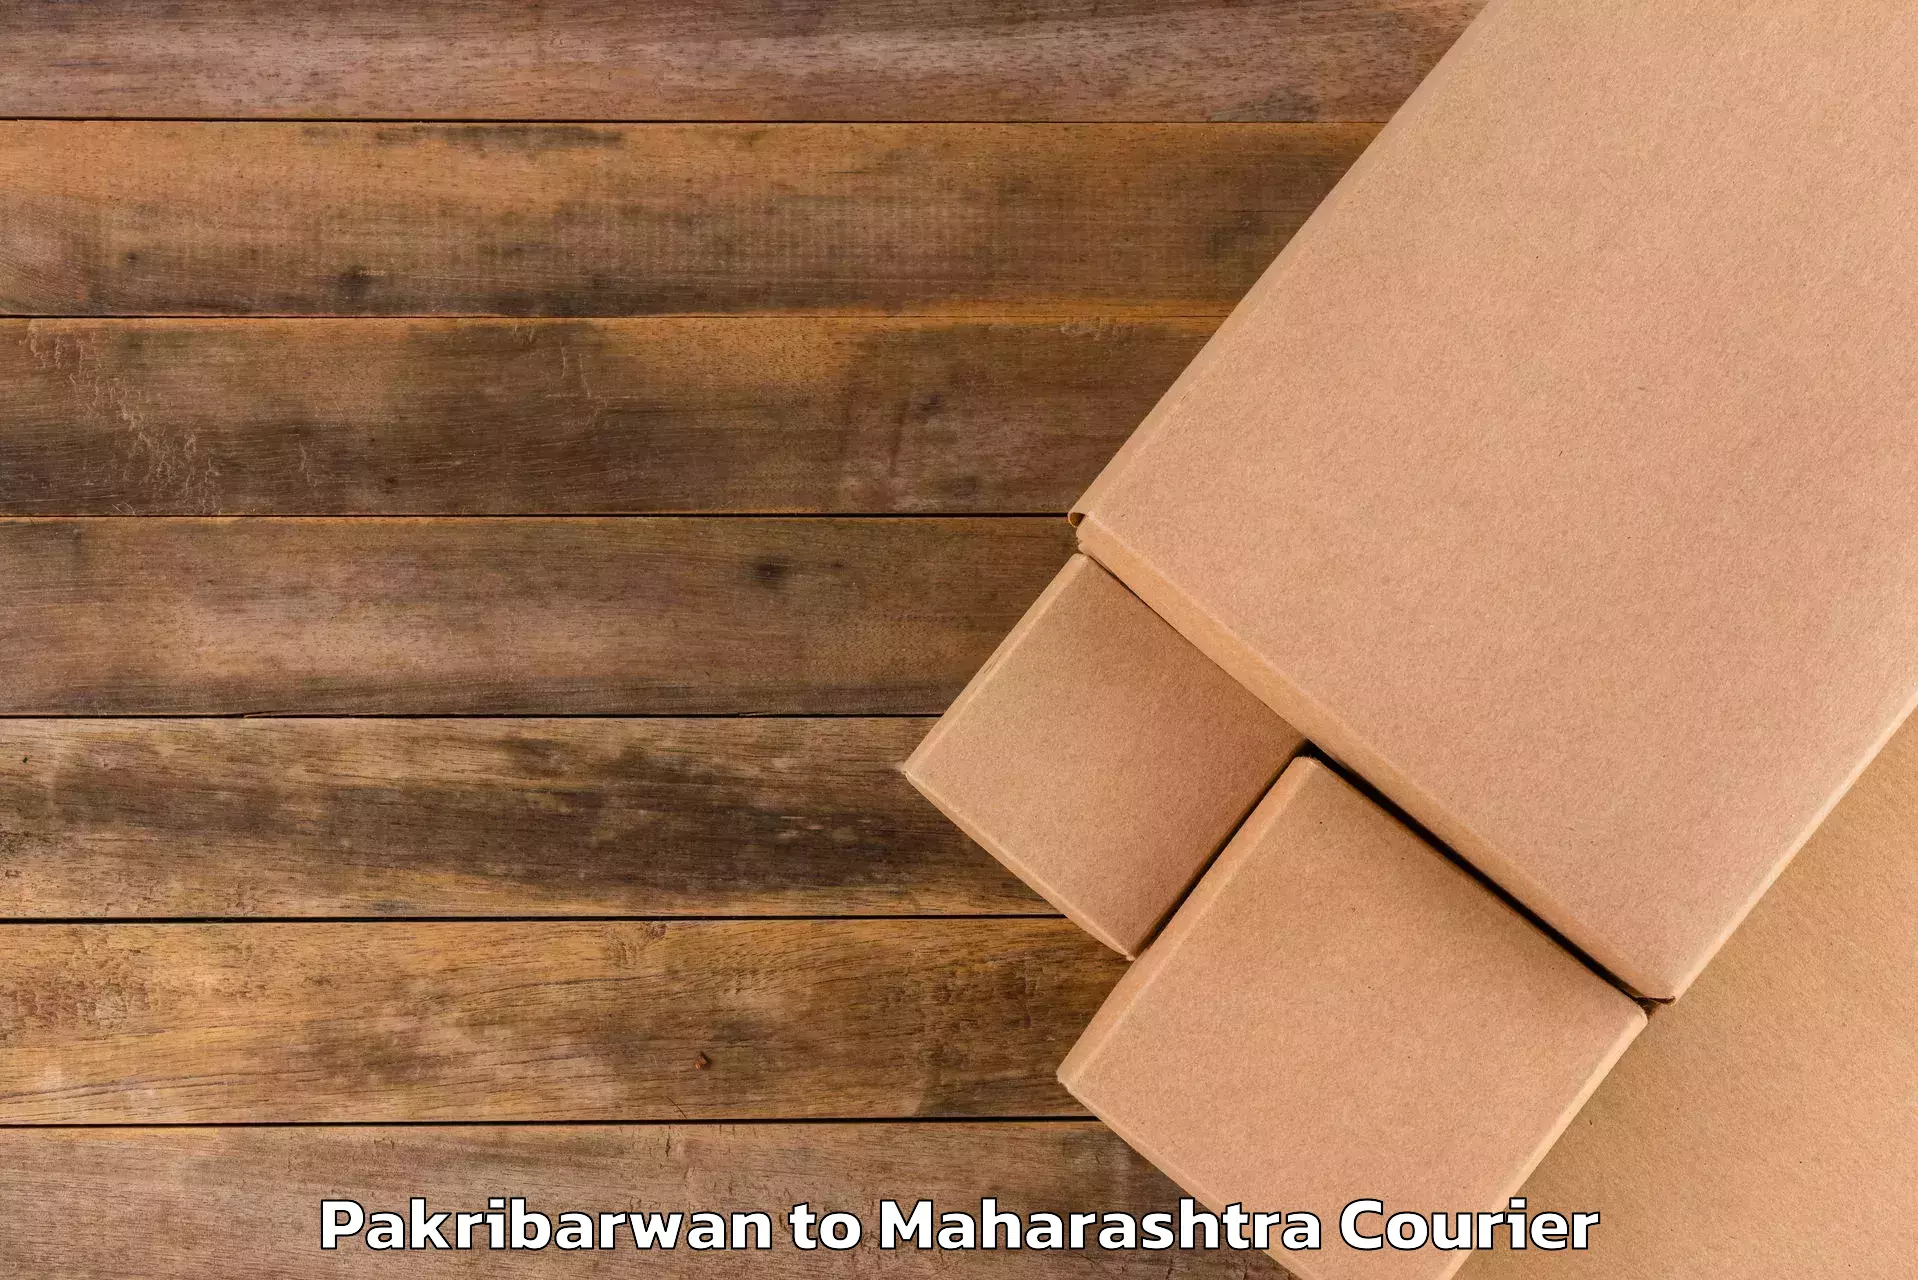 Luggage transport company Pakribarwan to Maharashtra